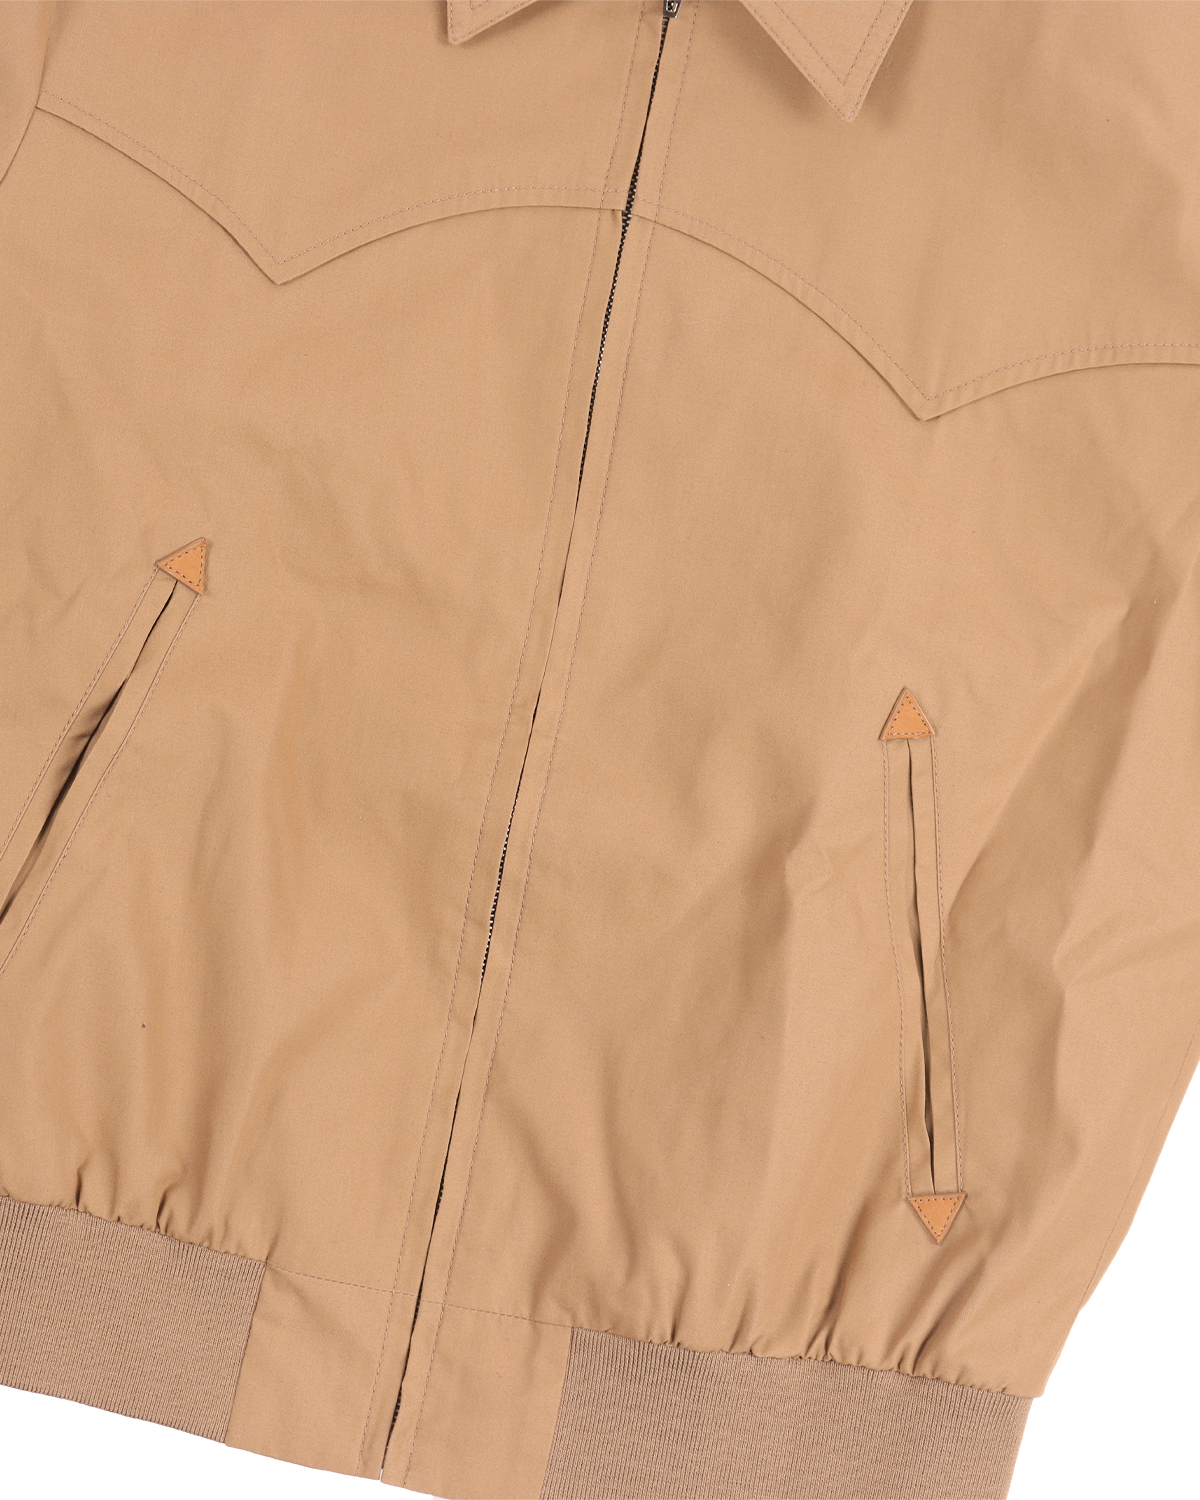 Western Zip Jacket w/ Tags (Camel)